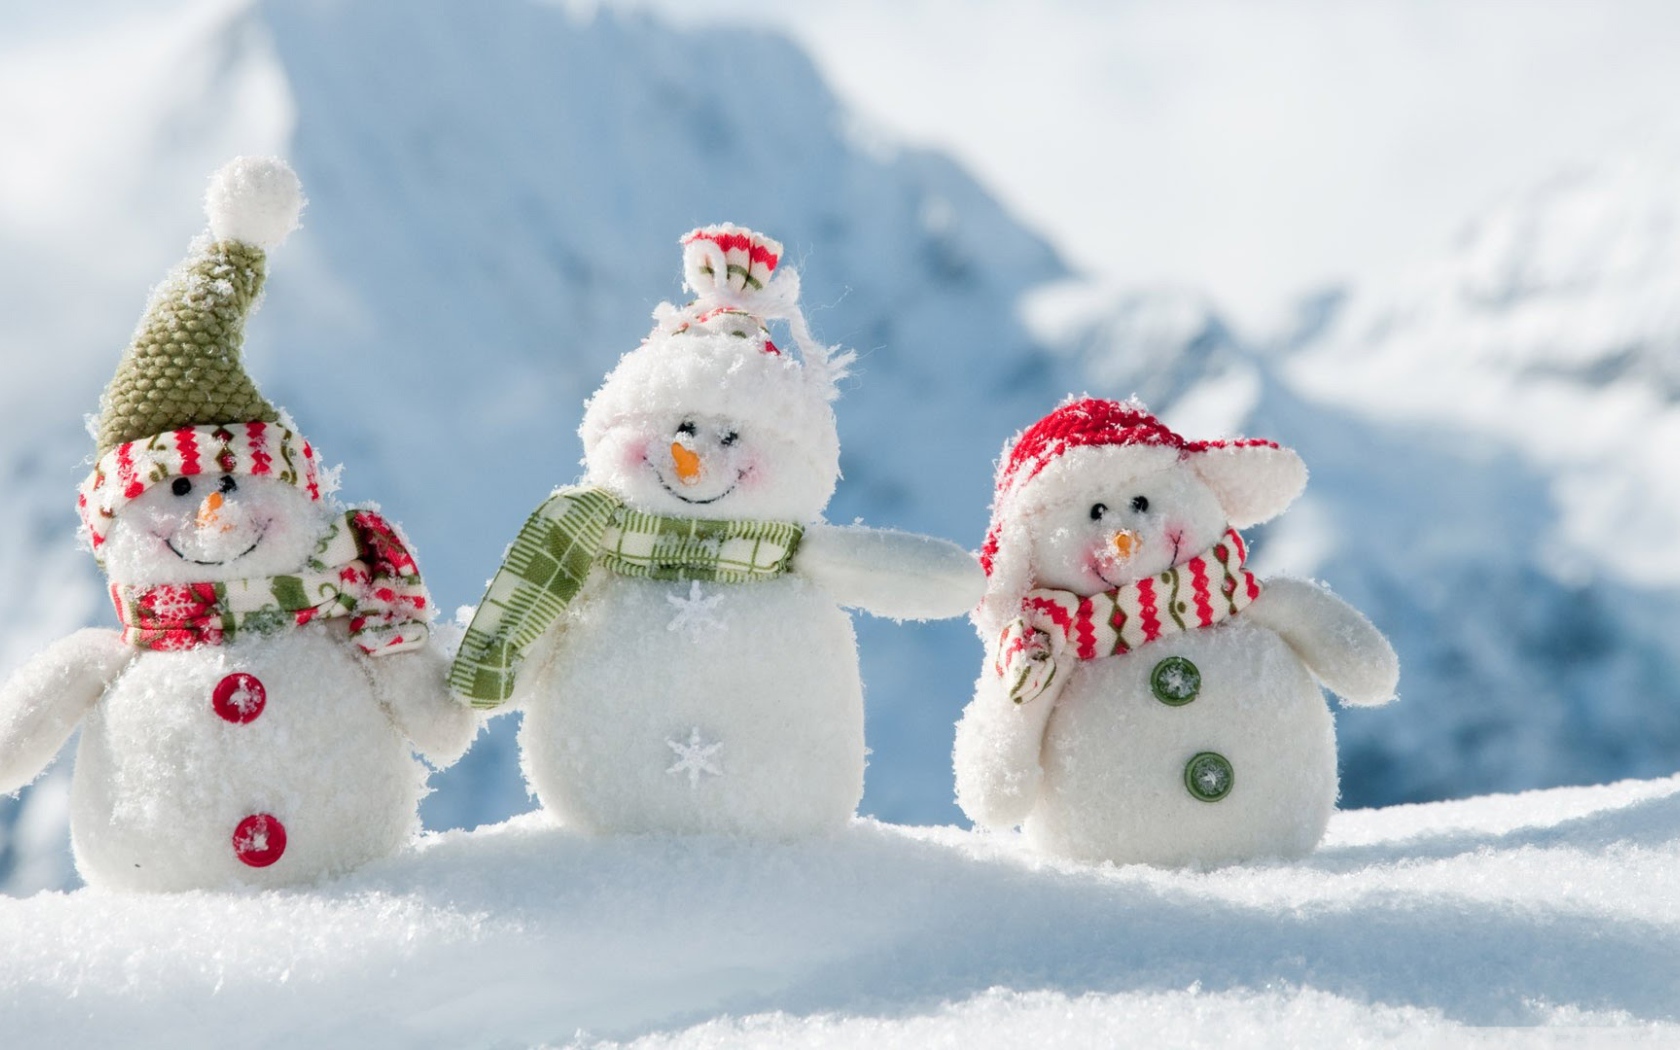 Three cheerful snowman on snow